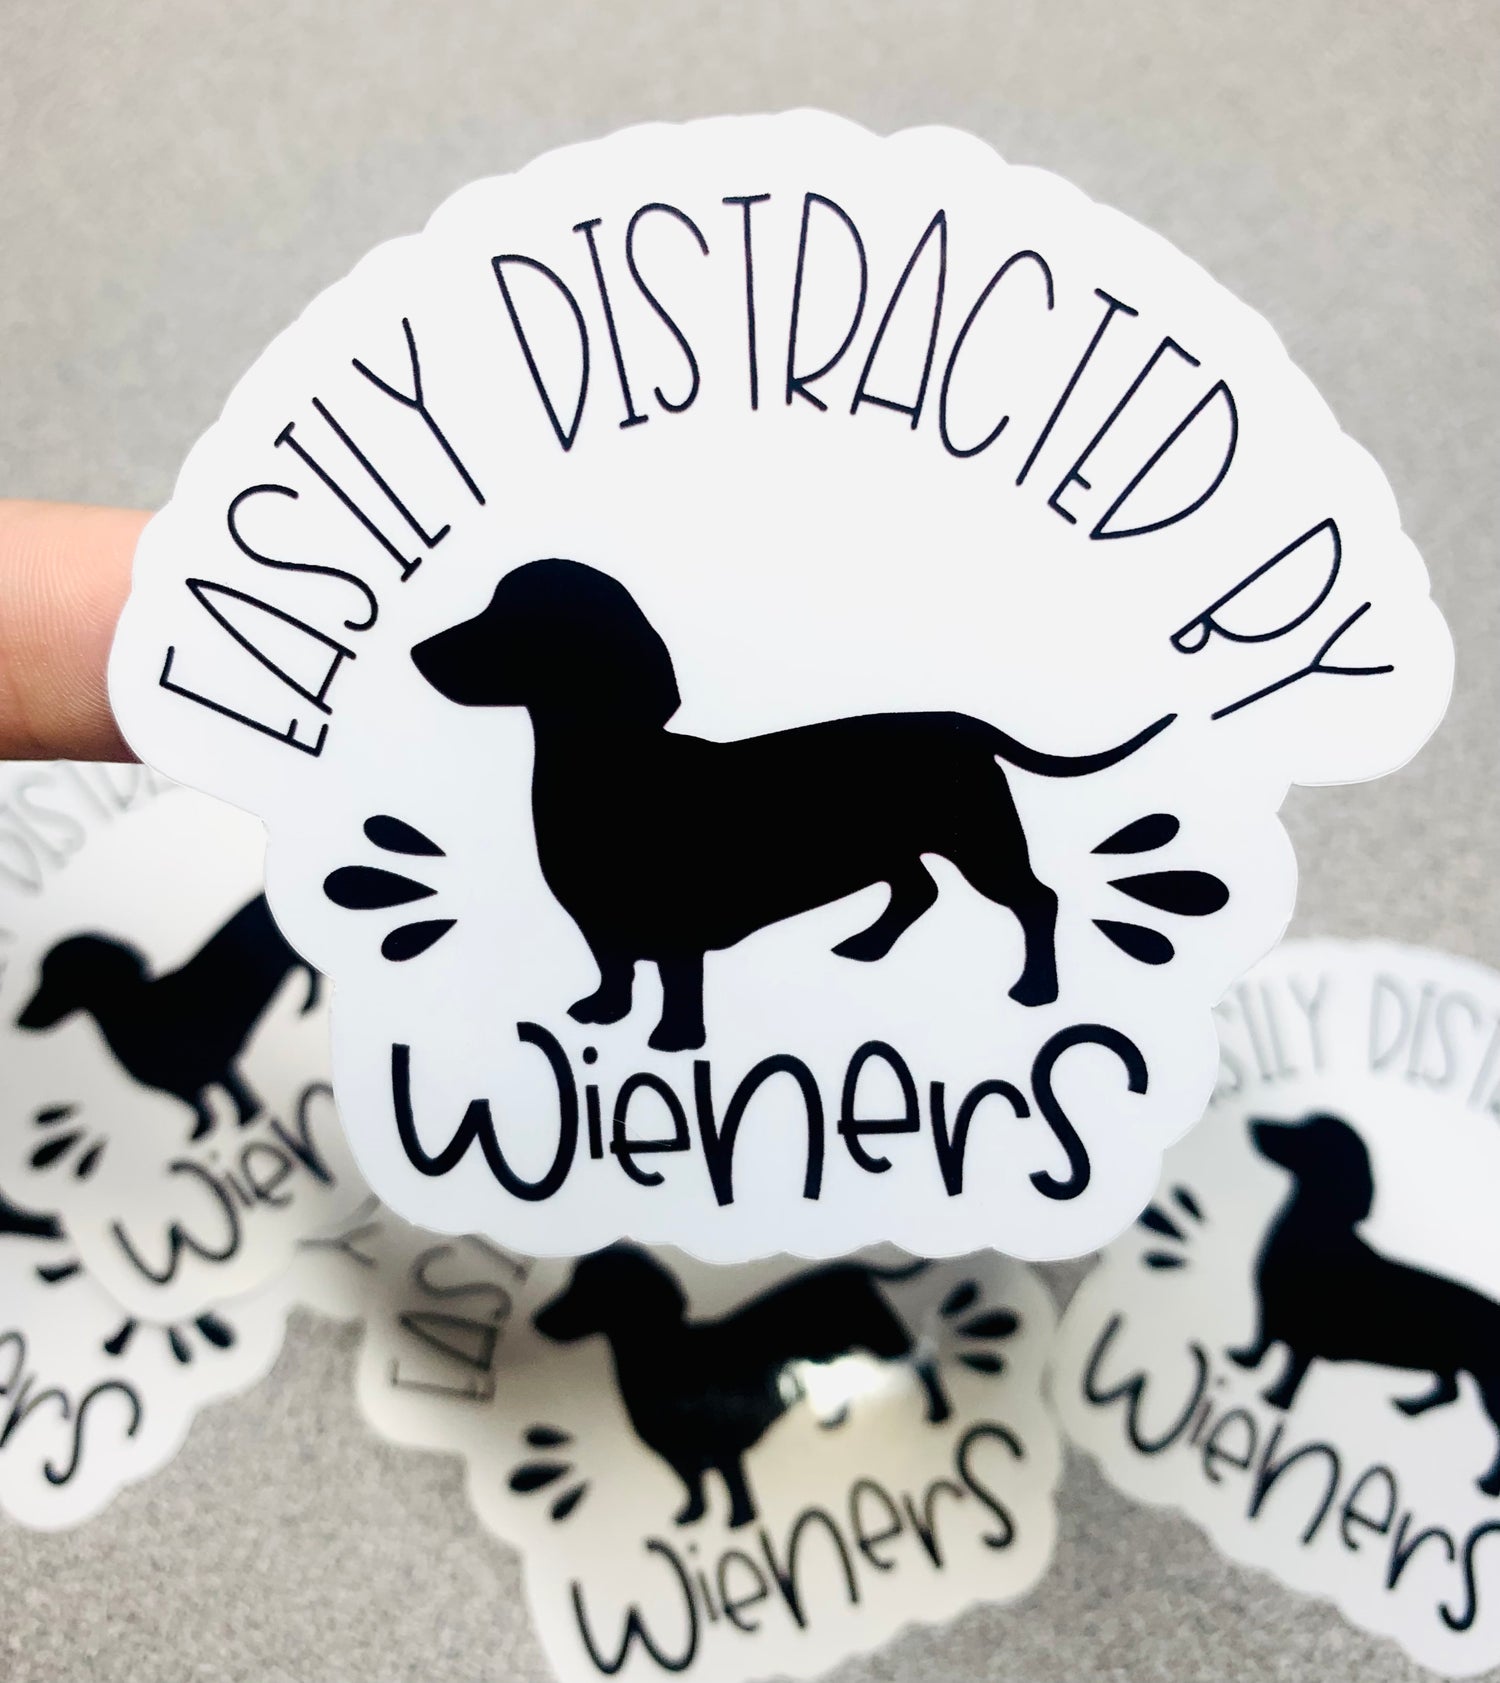 Easily Distracted by Wieners Vinyl Sticker - Scent Tree Studio